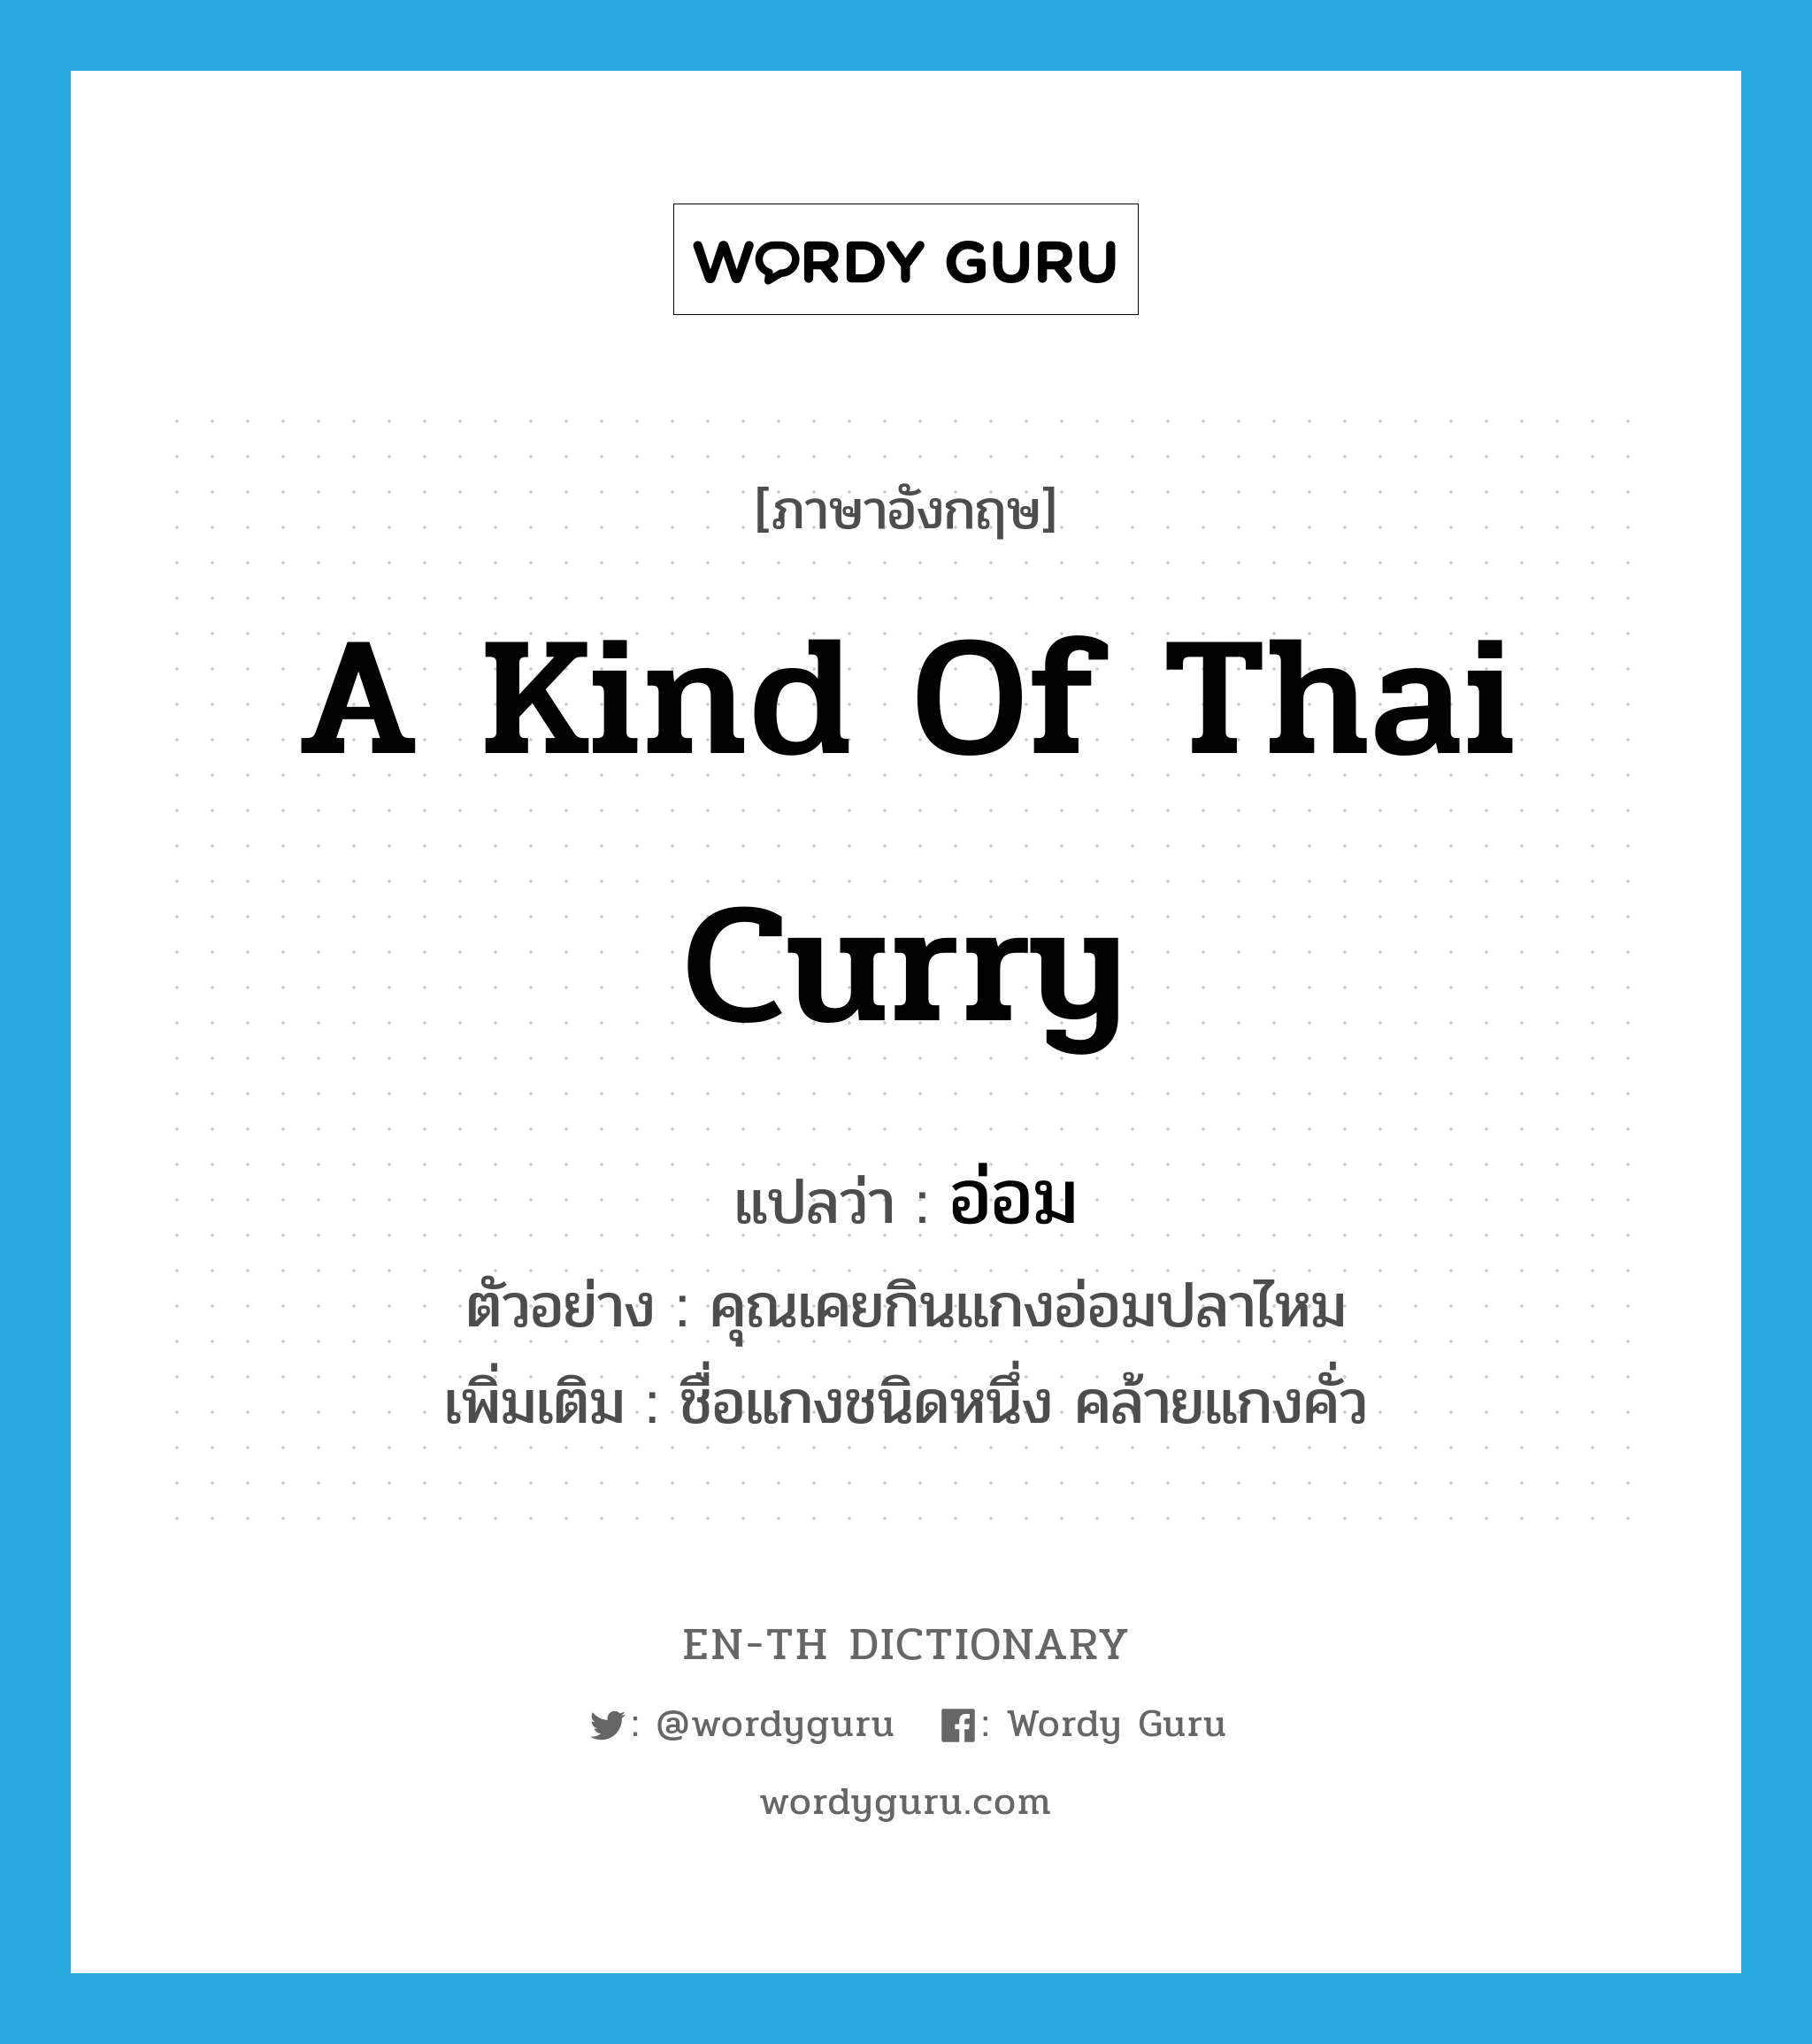 a kind of Thai curry แปลว่า? คำศัพท์ในกลุ่มประเภท N, คำศัพท์ภาษาอังกฤษ a kind of Thai curry แปลว่า อ่อม ประเภท N ตัวอย่าง คุณเคยกินแกงอ่อมปลาไหม เพิ่มเติม ชื่อแกงชนิดหนึ่ง คล้ายแกงคั่ว หมวด N